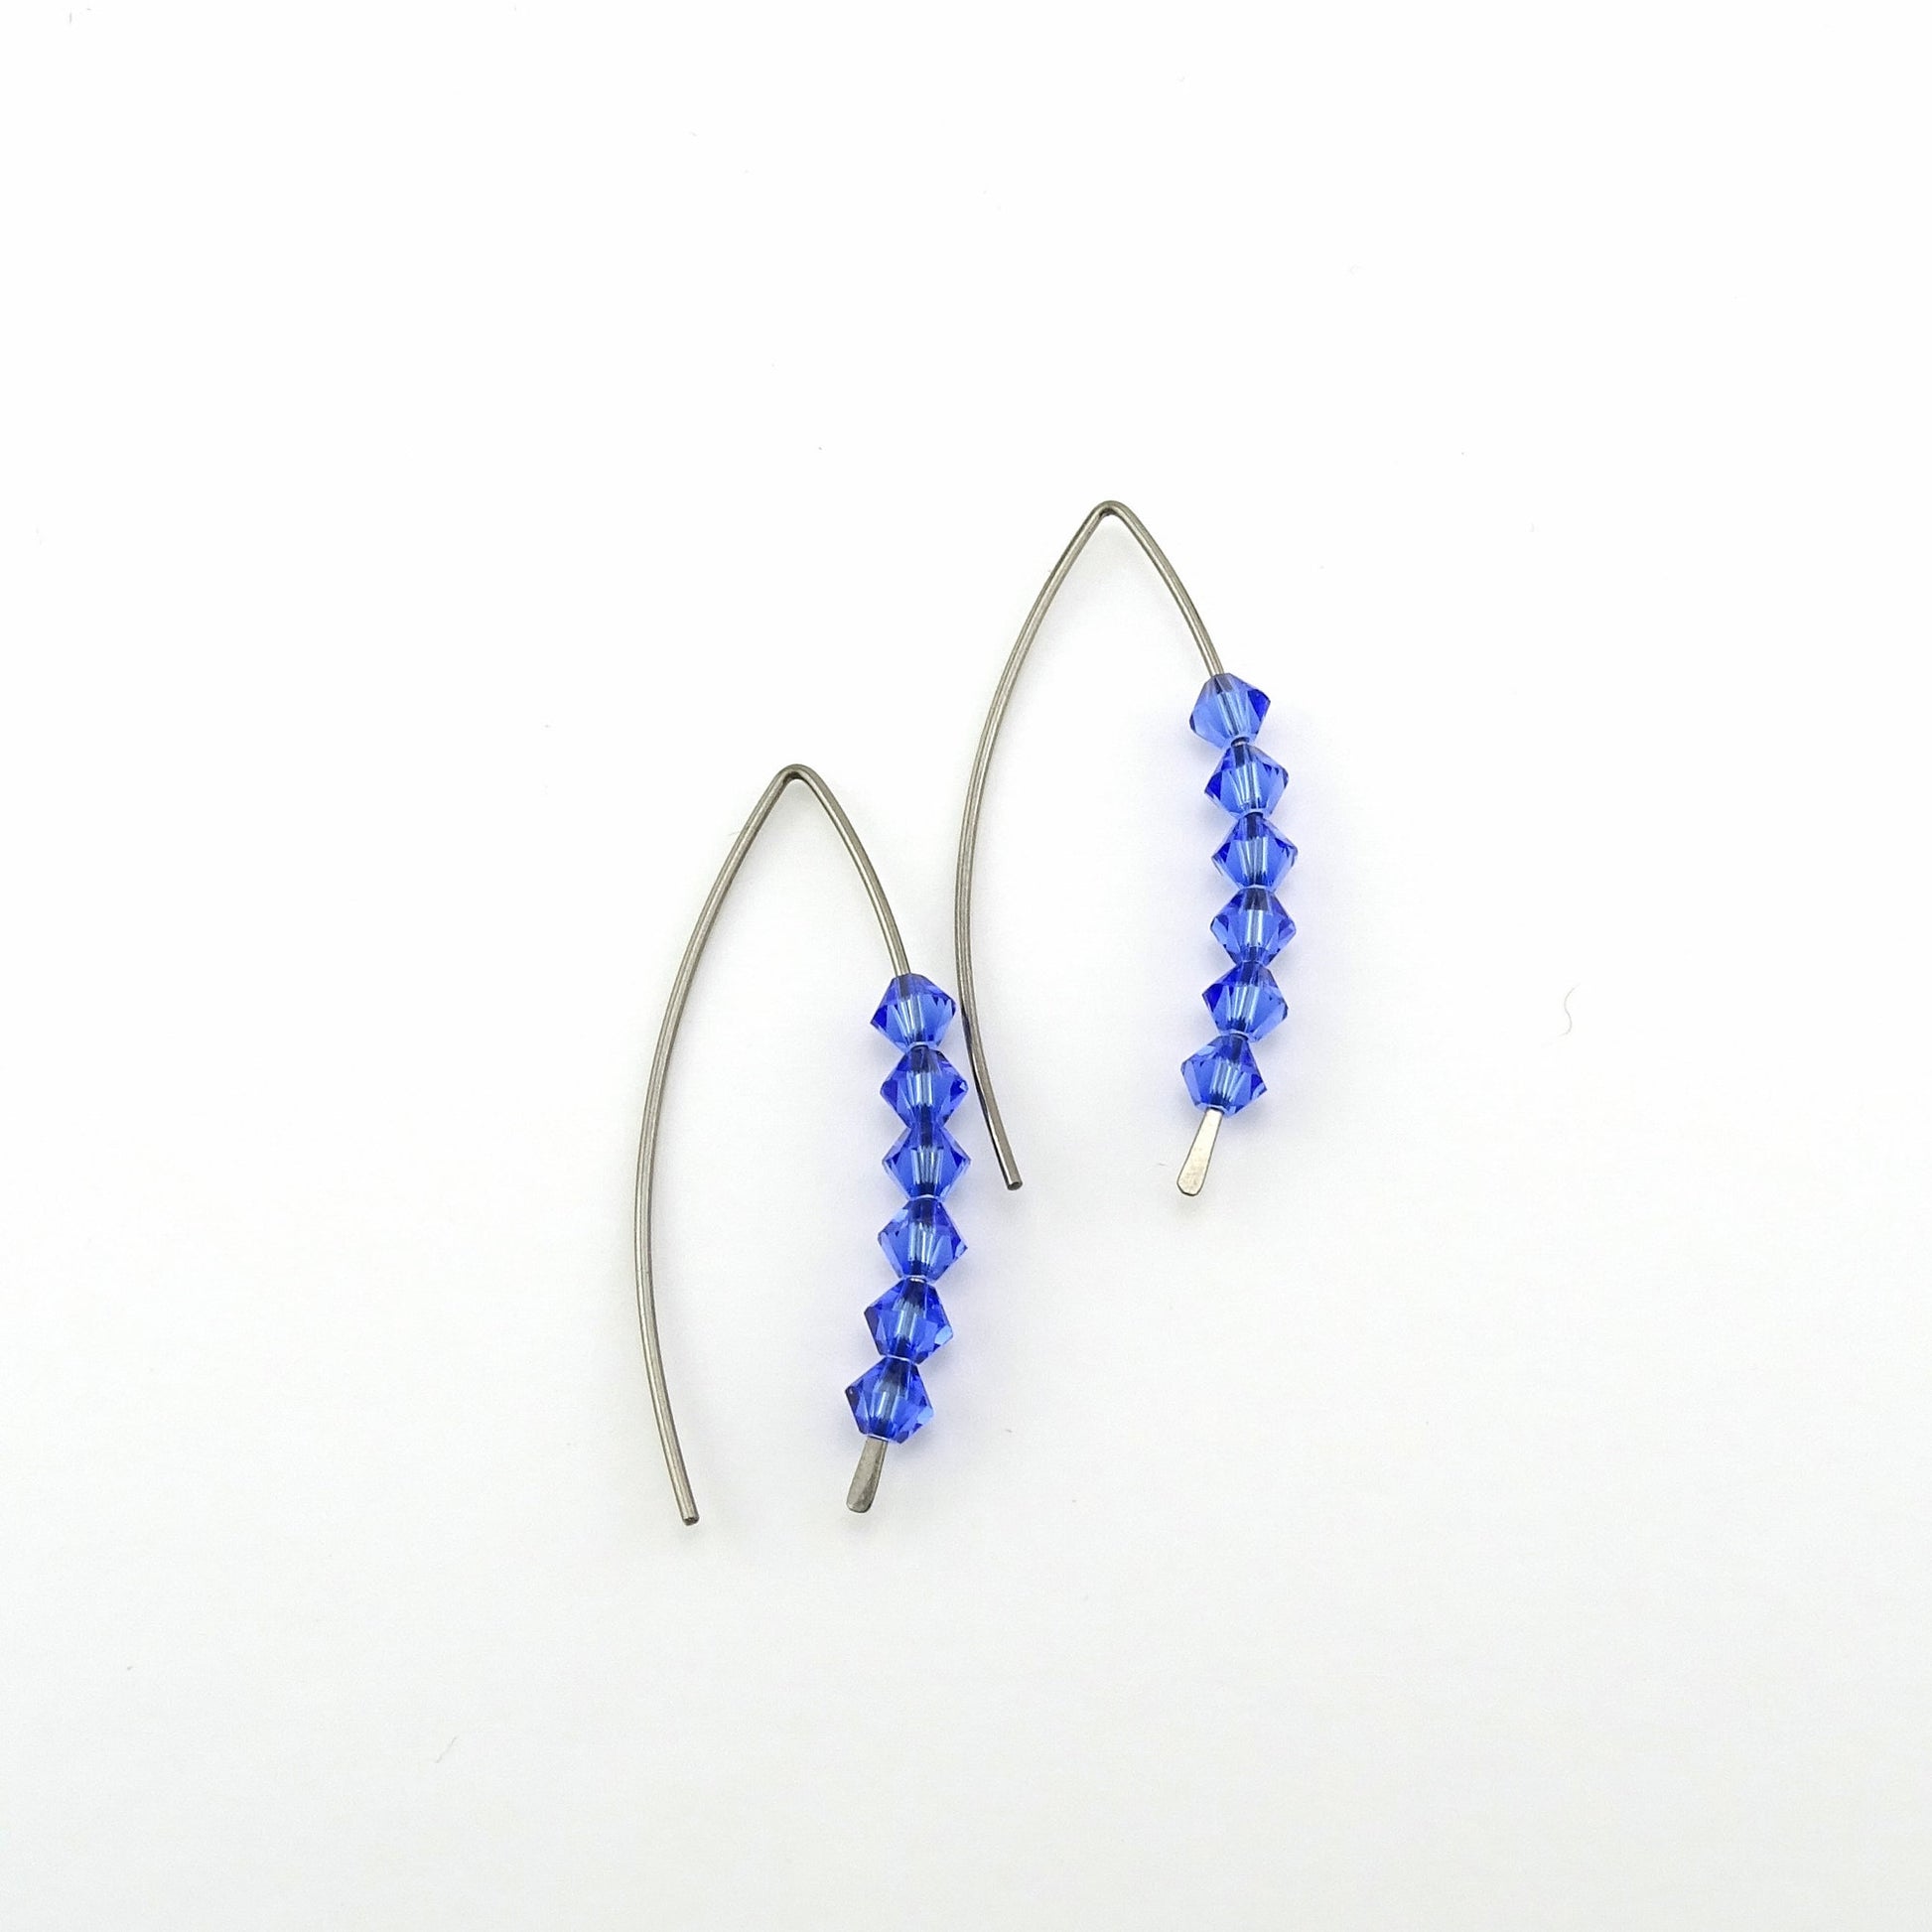 Sapphire Blue Slider Wishbone Threaders Niobium Earrings, Swarovski Crystal, Nickel Free Hypoallergenic Threader Earrings for Sensitive Ears